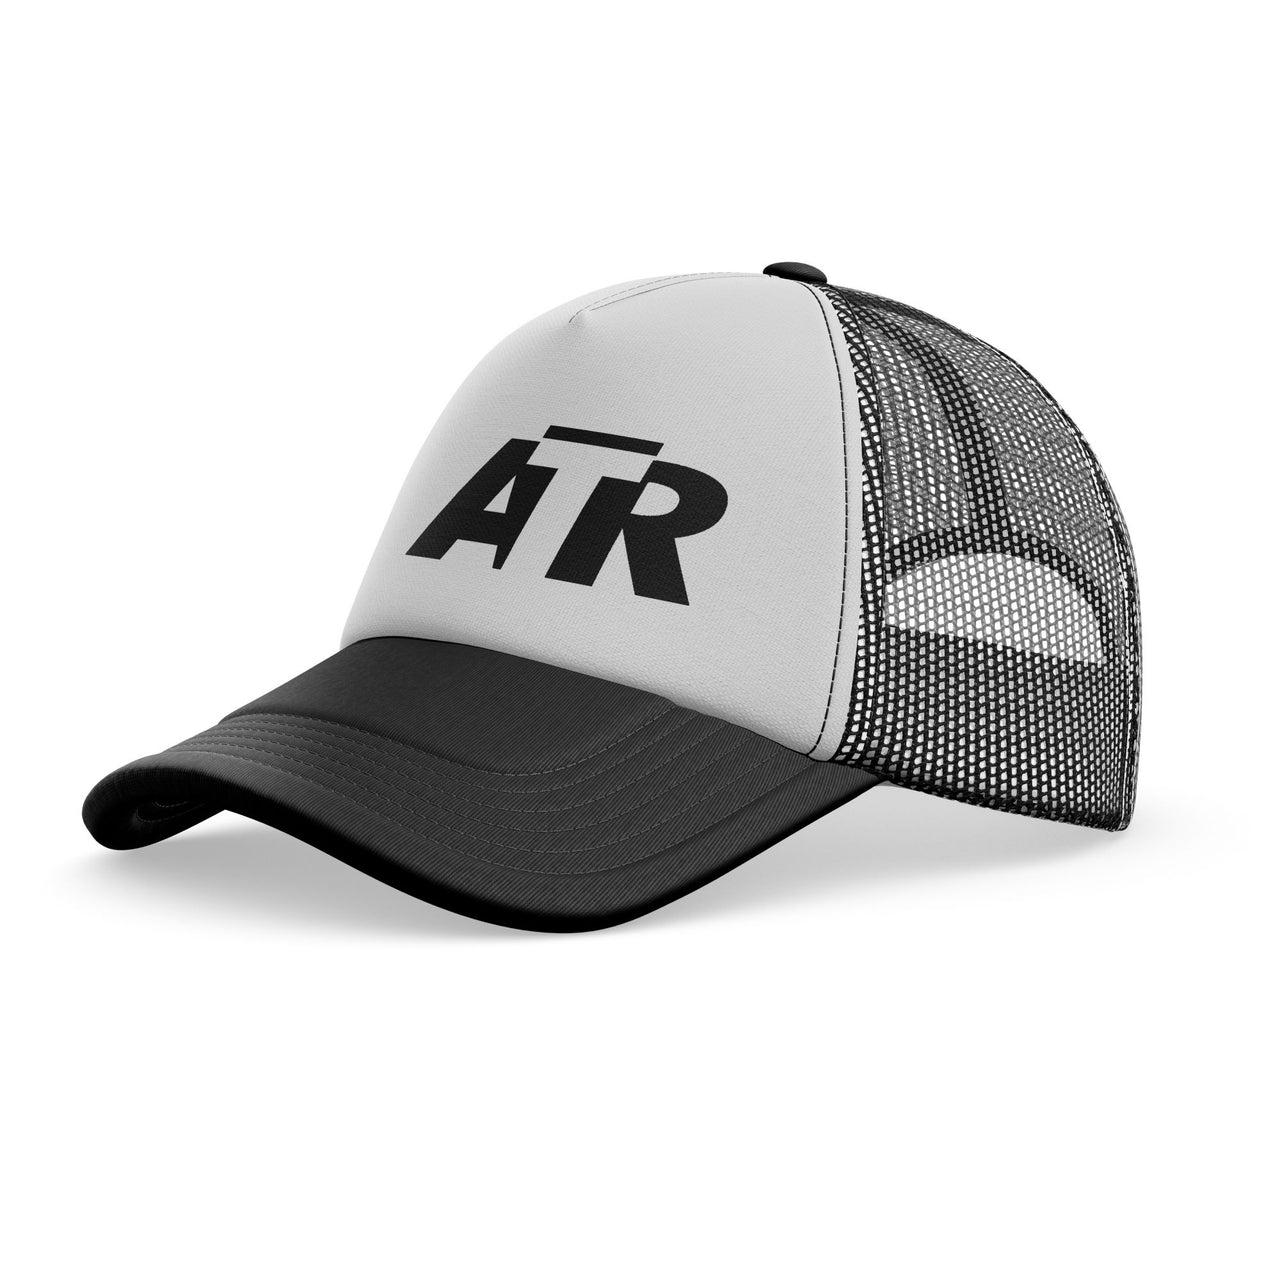 ATR & Text Designed Trucker Caps & Hats